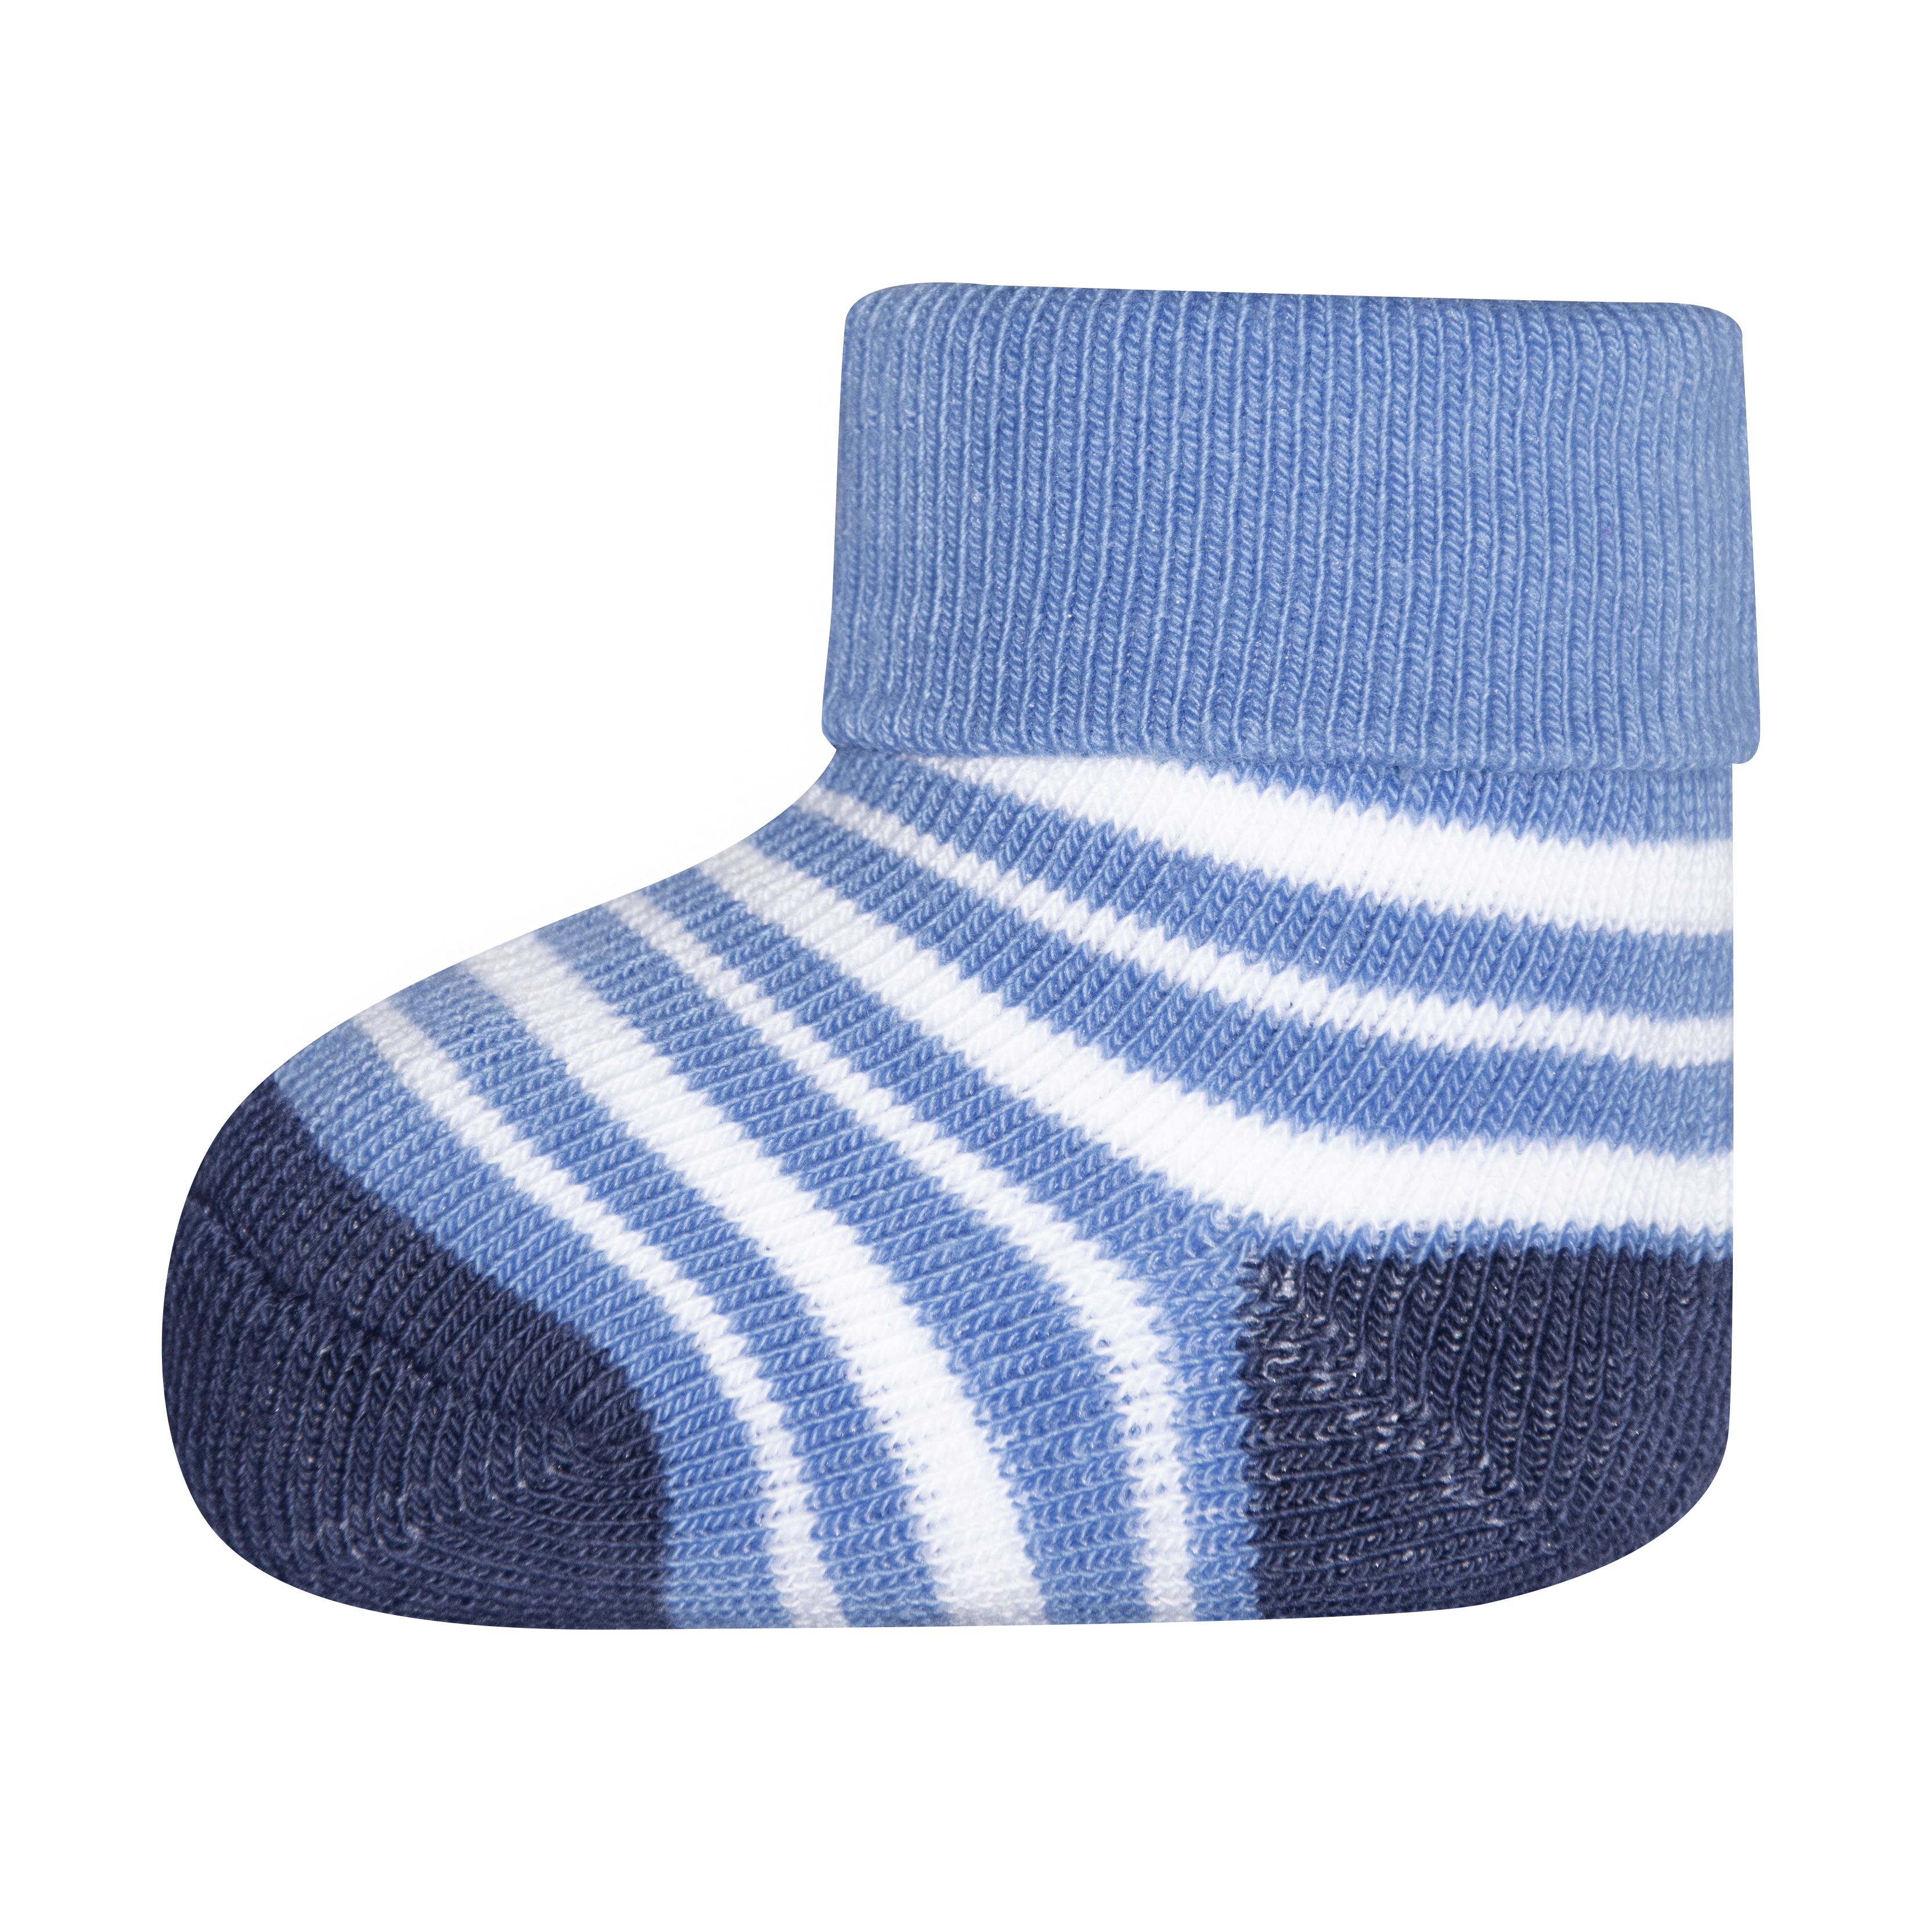 Jungen Erstlings-Socken (Dreierpack) Grau Ringel